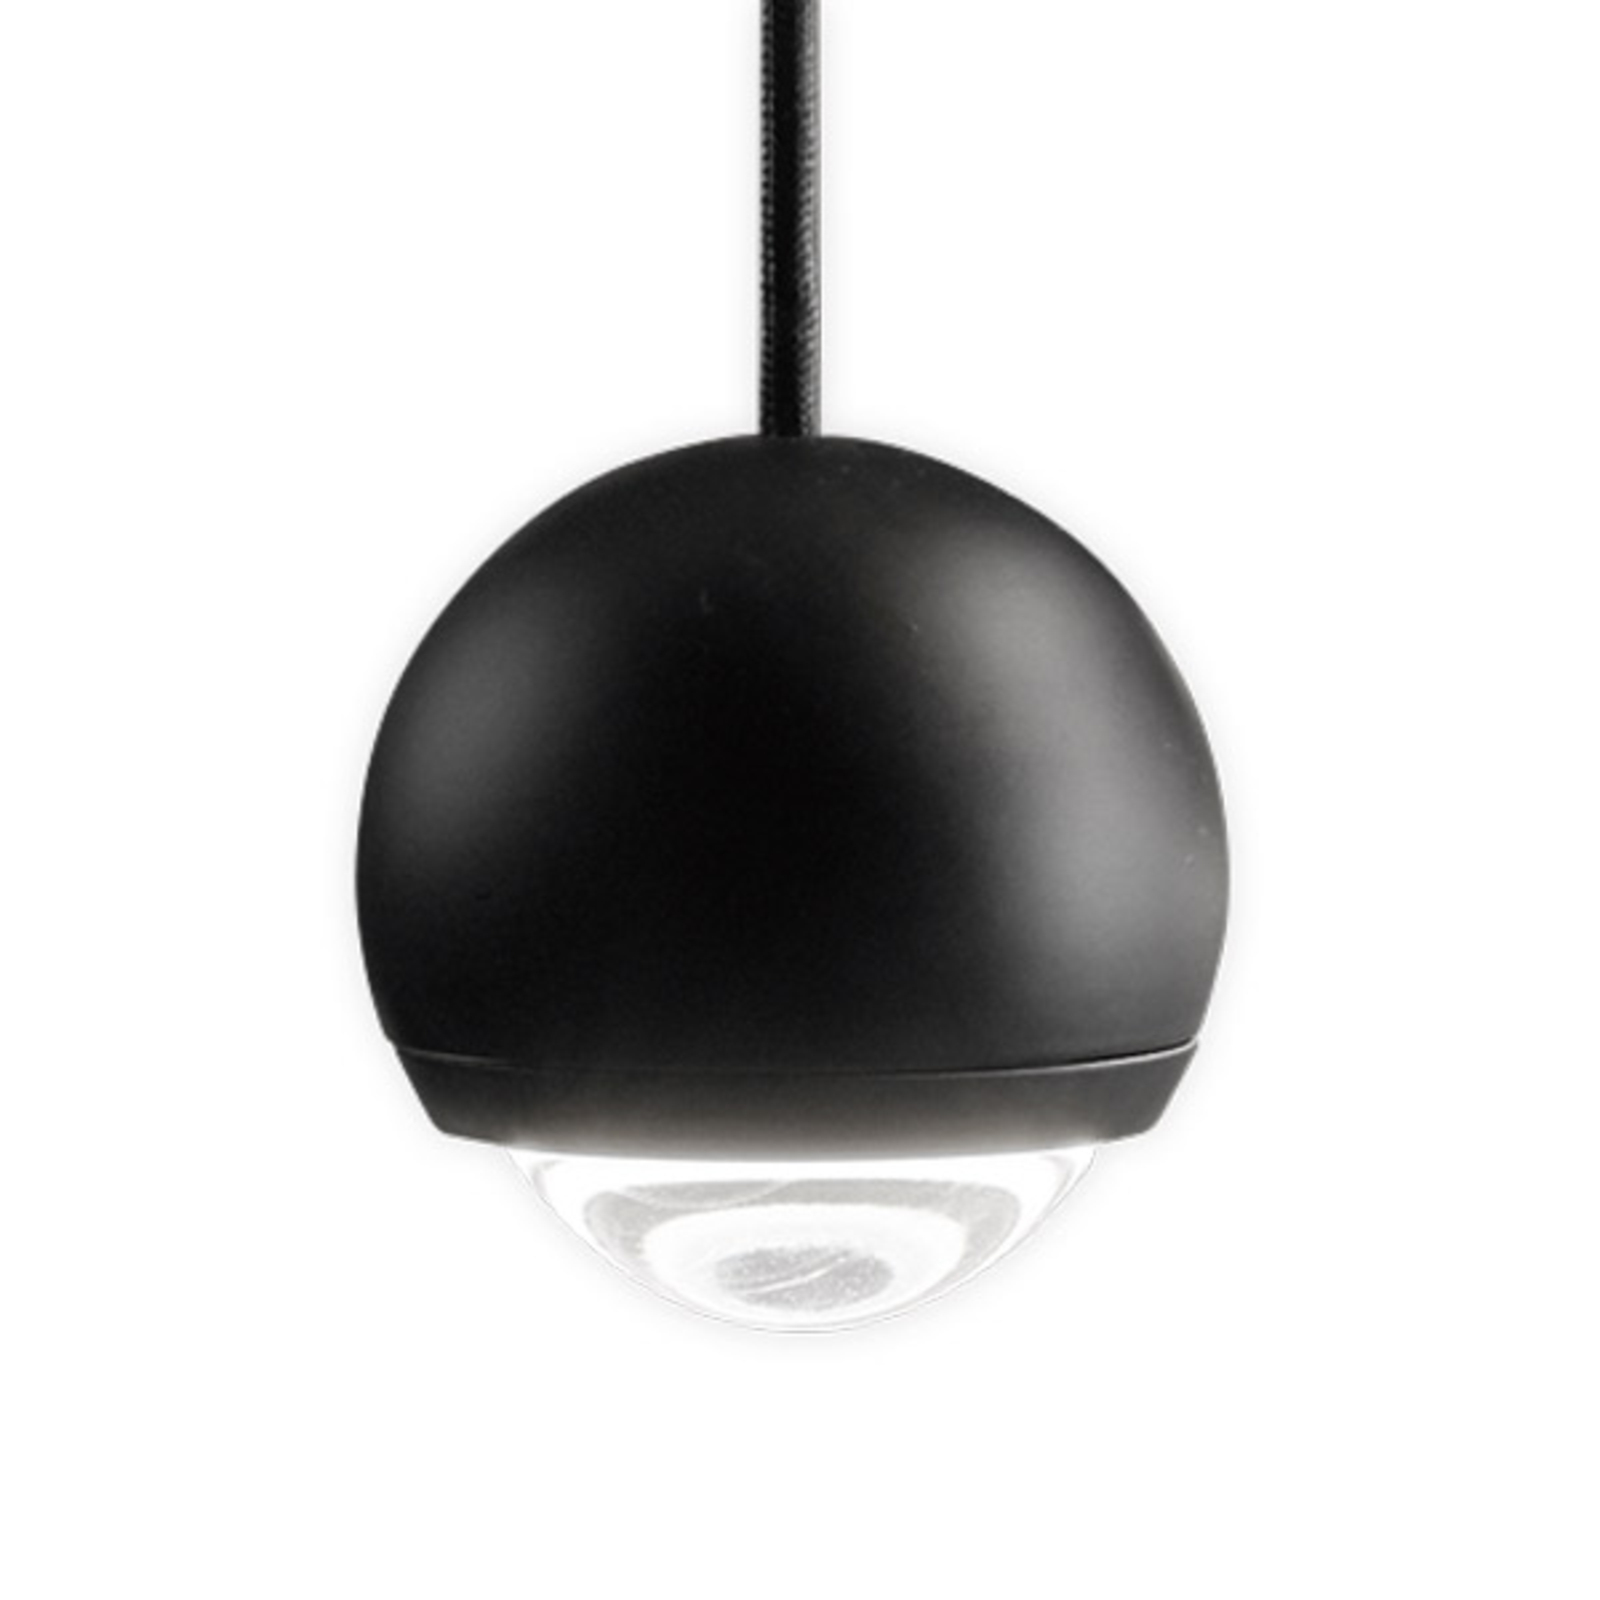 Egger Cleo lampada LED a sospensione, nero